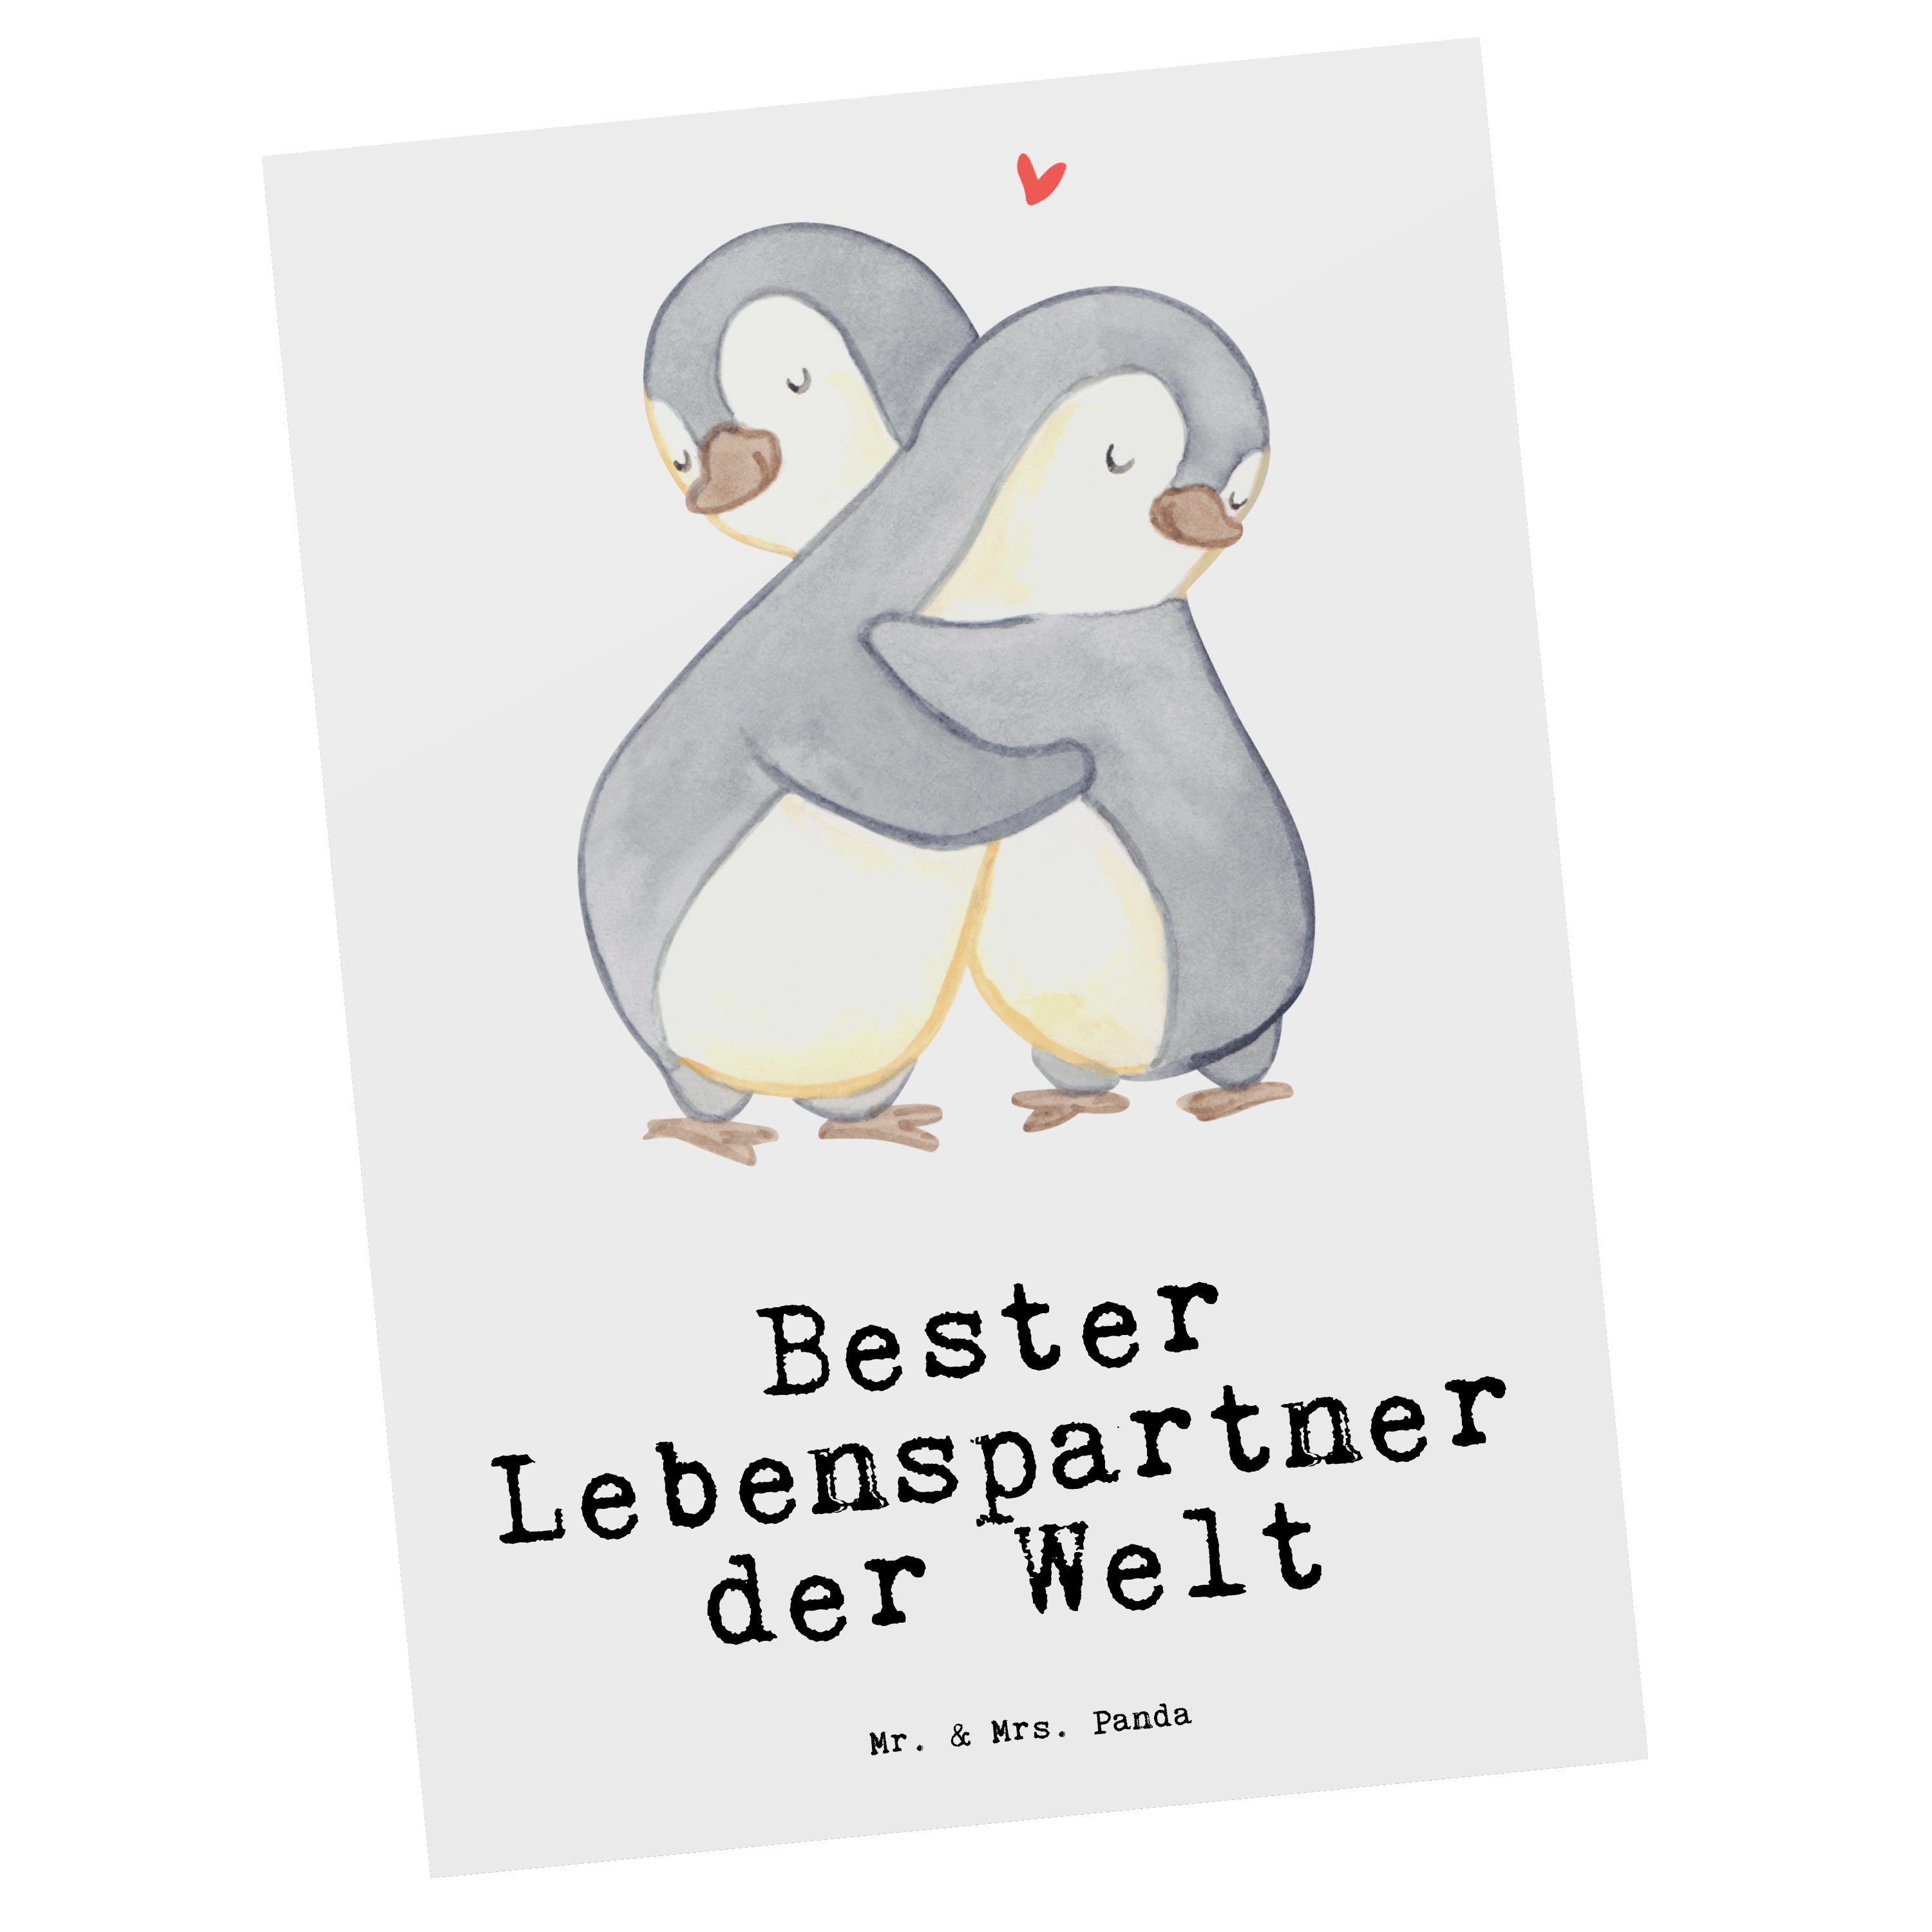 Mr. & Mrs. Panda Postkarte Pinguin Bester Lebenspartner der Welt - Weiß - Geschenk, Einladung, Grußkarte, Ehefrau, Freund, Freude machen, Geschenkkarte, Geschenktipp, Bedanken